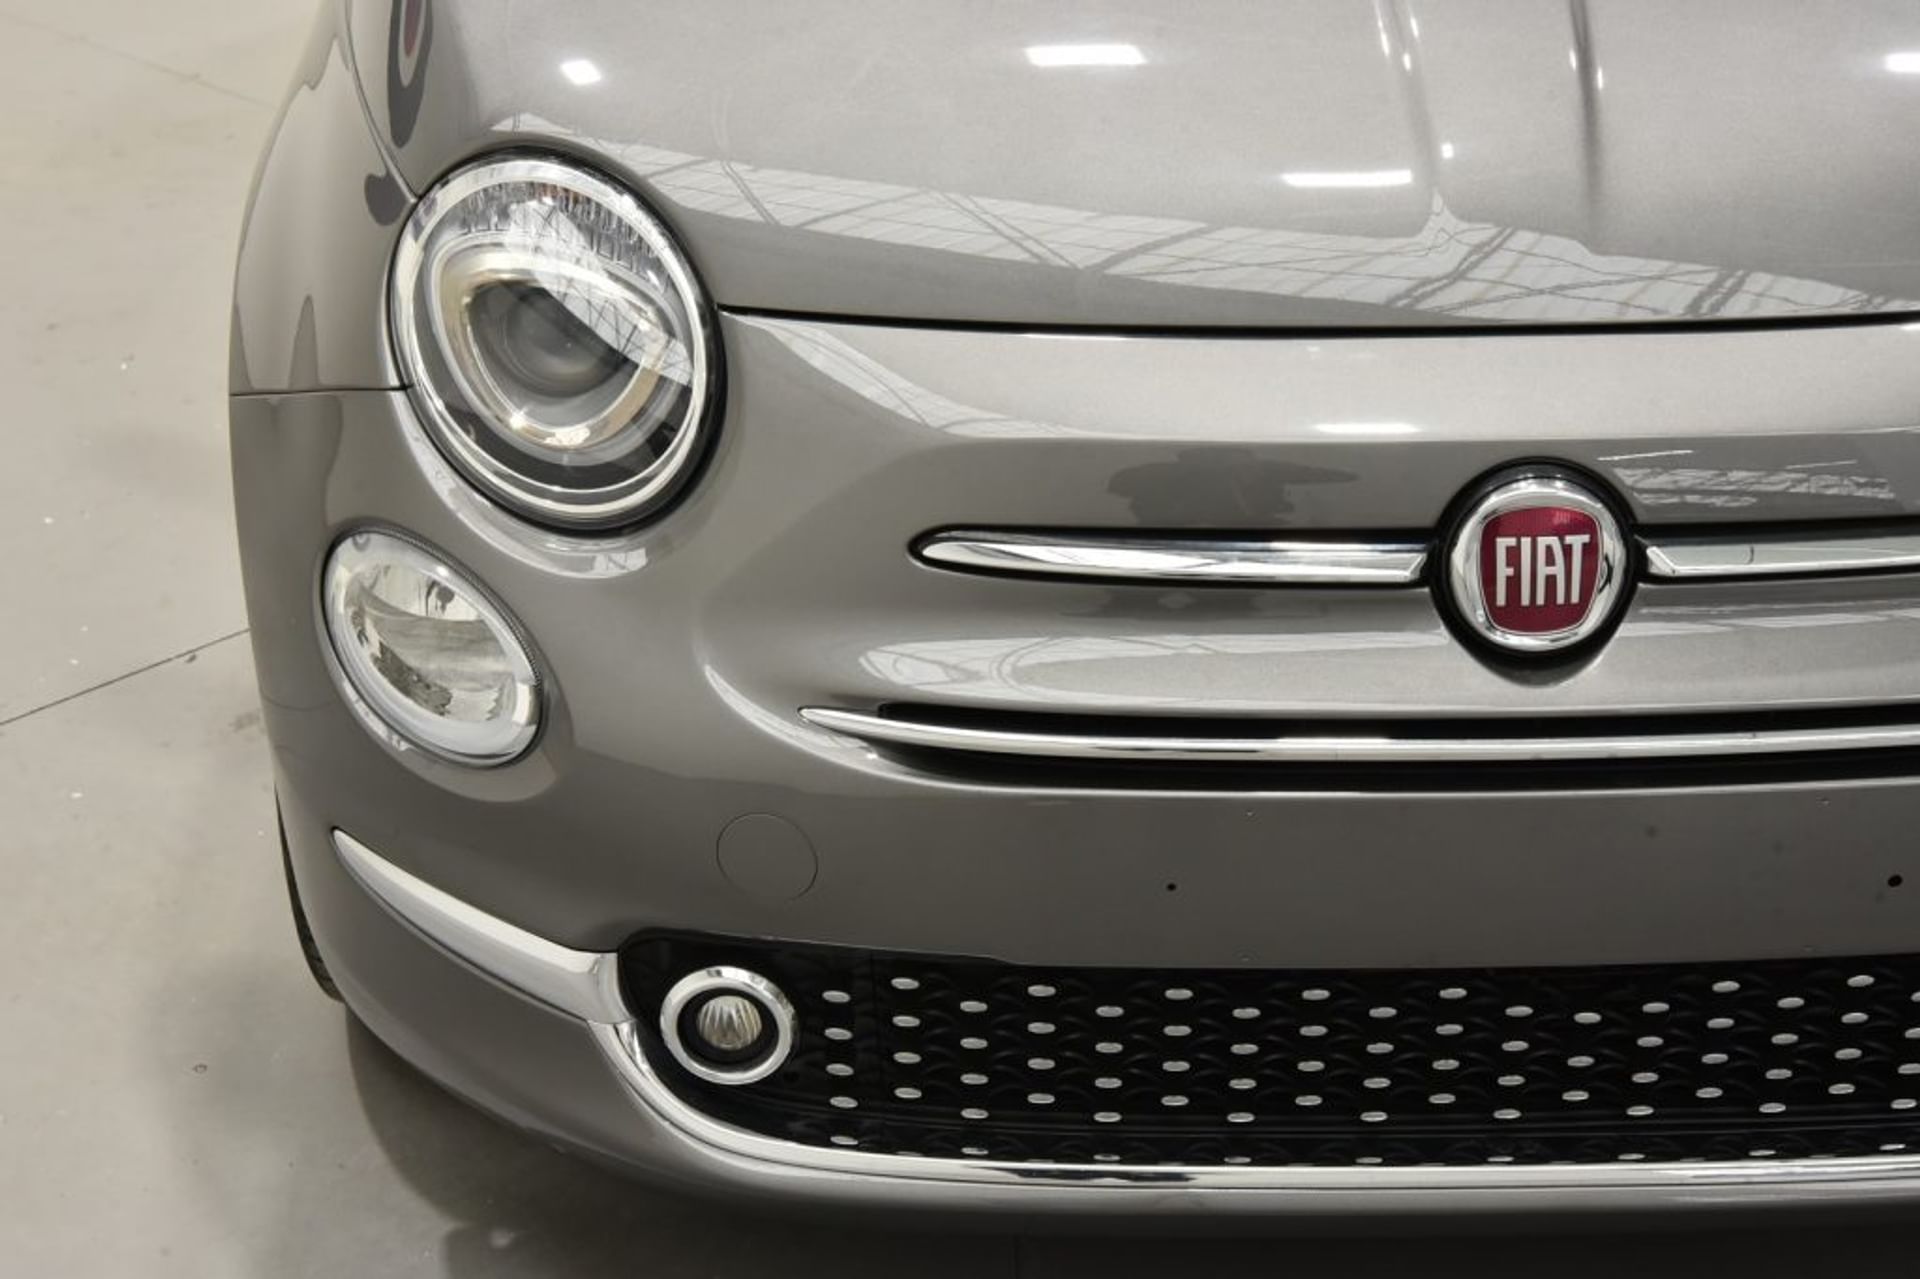 Fiat 1.2 - Luci